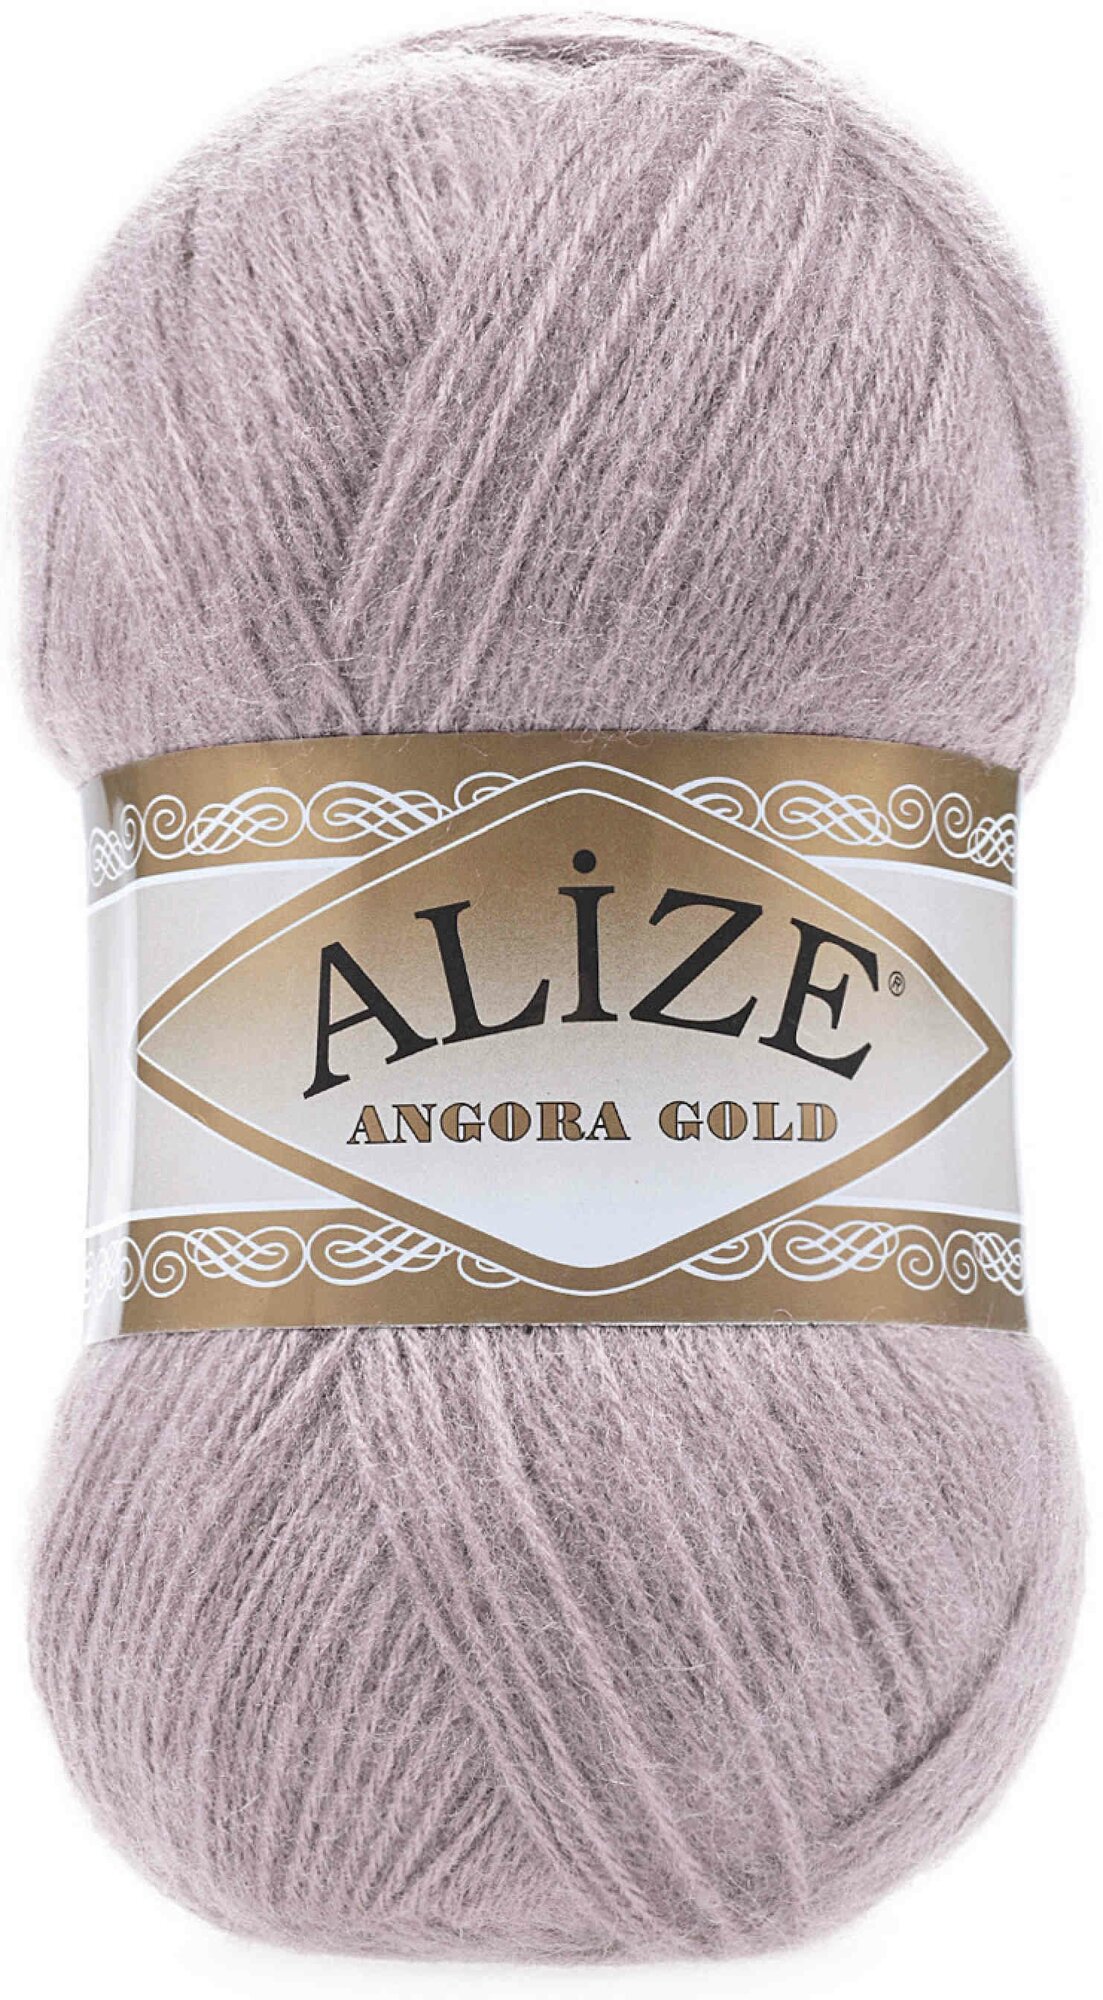 Пряжа Alize Angora Gold серая роза (163), 80%акрил/20%шерсть, 550м, 100г, 1шт